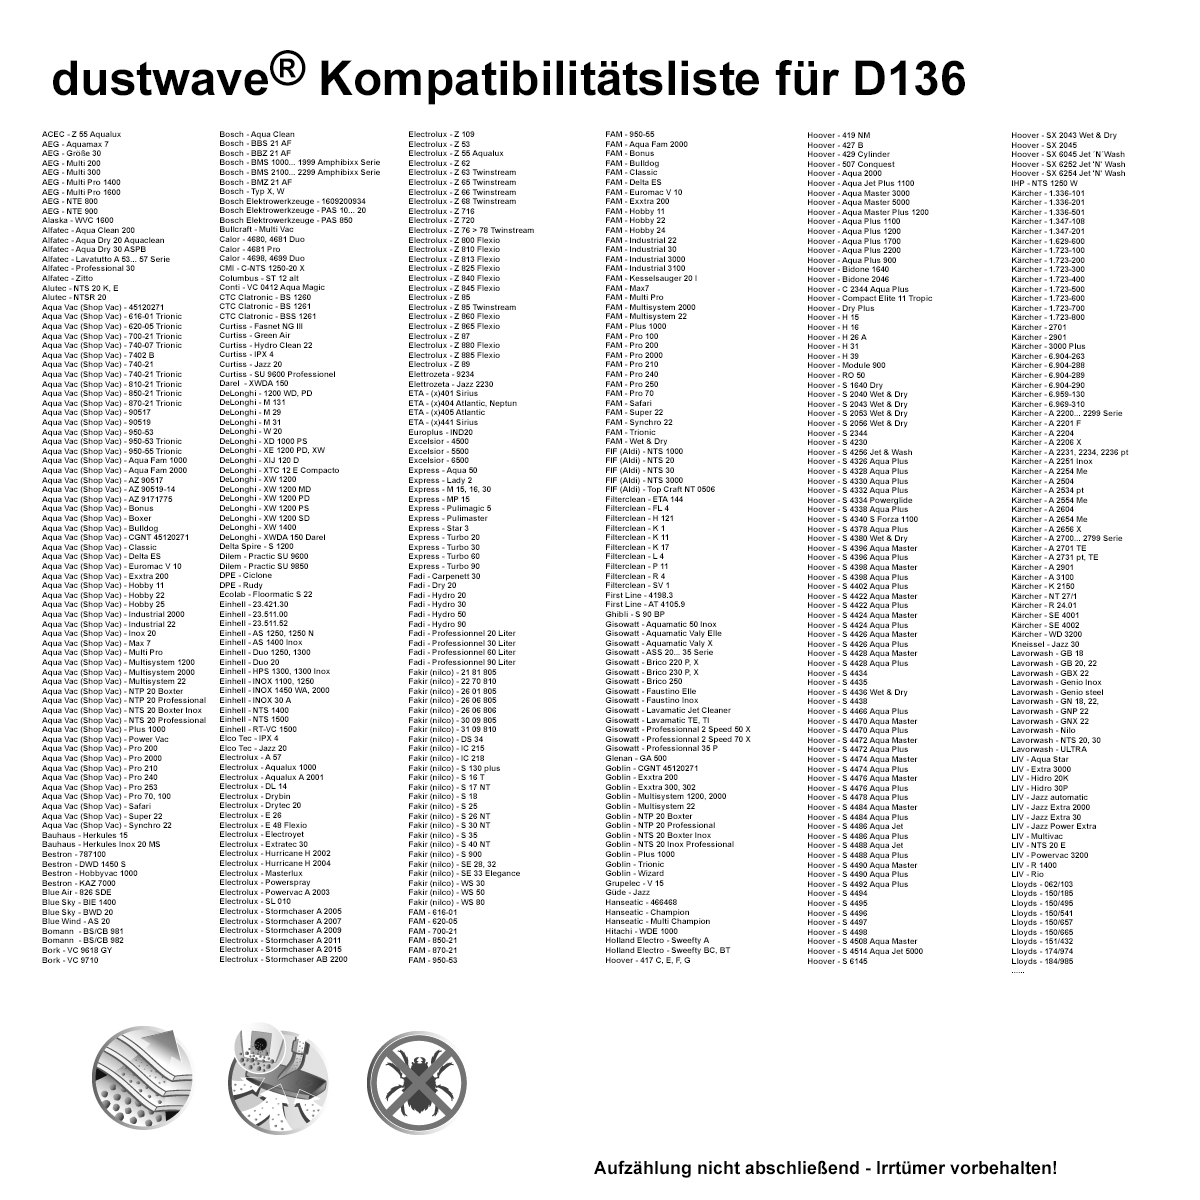 10x dustwave® Vlies Staubsaugerbeutel (ca. 20 Liter) passend für Nilfisk-Alto Aero 20-01, 20-11, 20-21, 25-01, 25-11, 25-21 / Markenfilterbeutel - Made in Germany